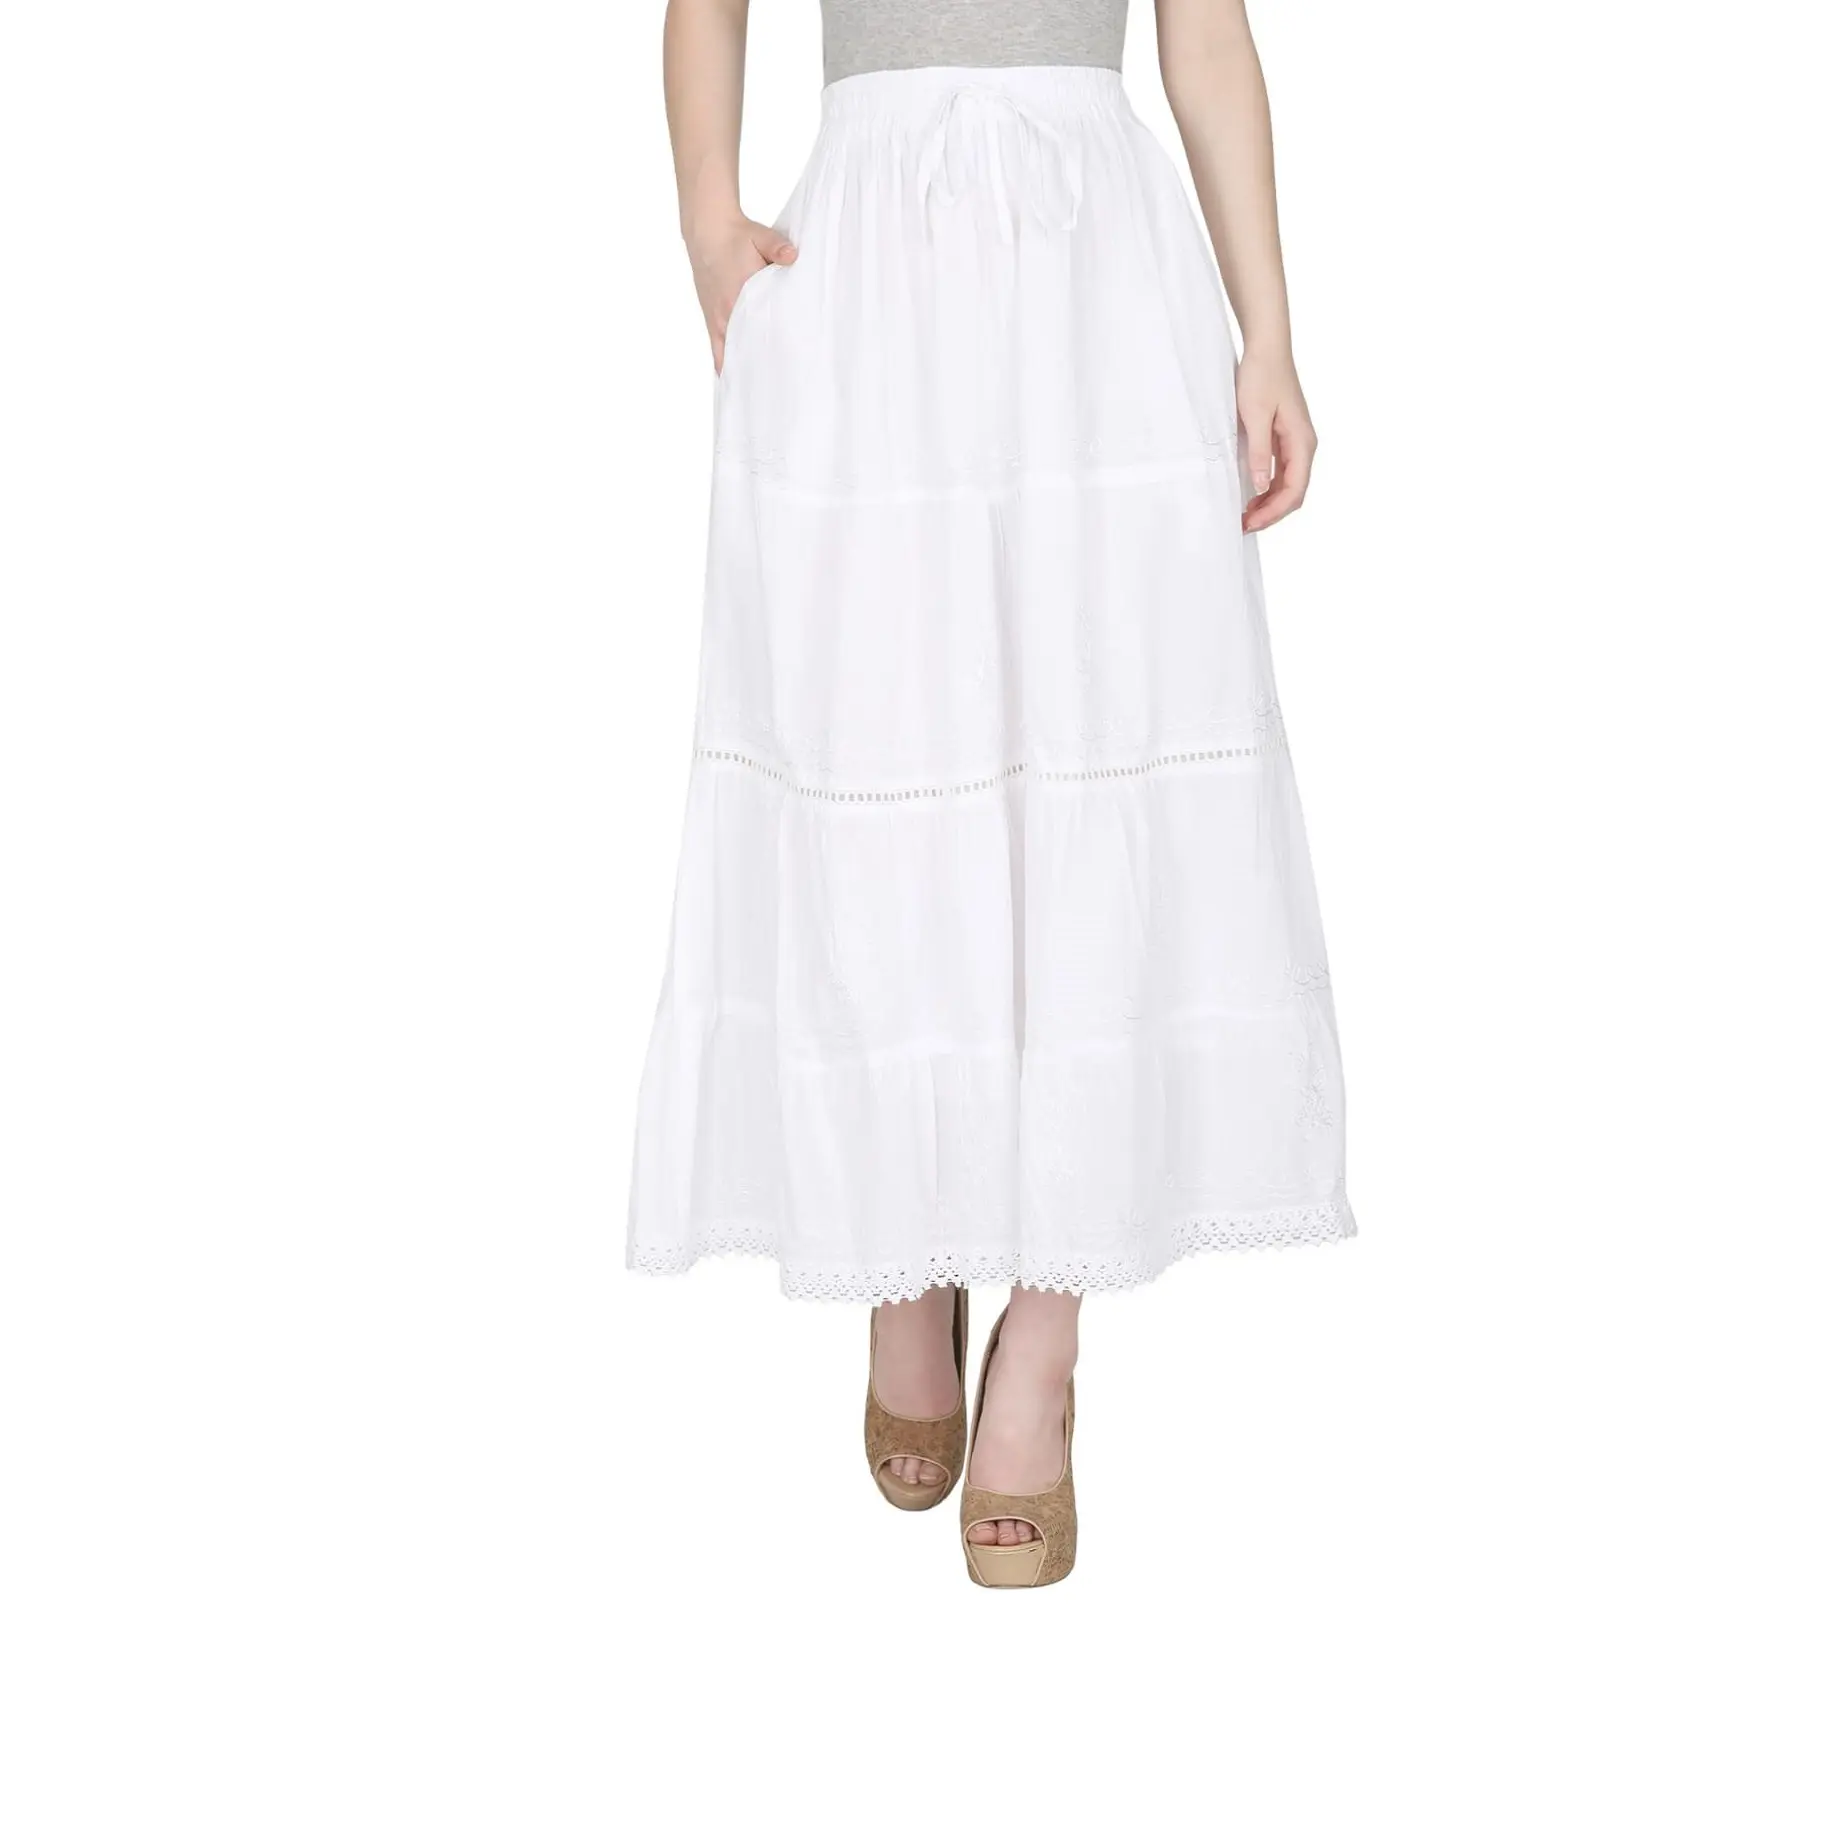 Moda % 100% pamuk beyaz çingene etek kadın giyim çekici uzun etek/rahat etek toptan fiyata